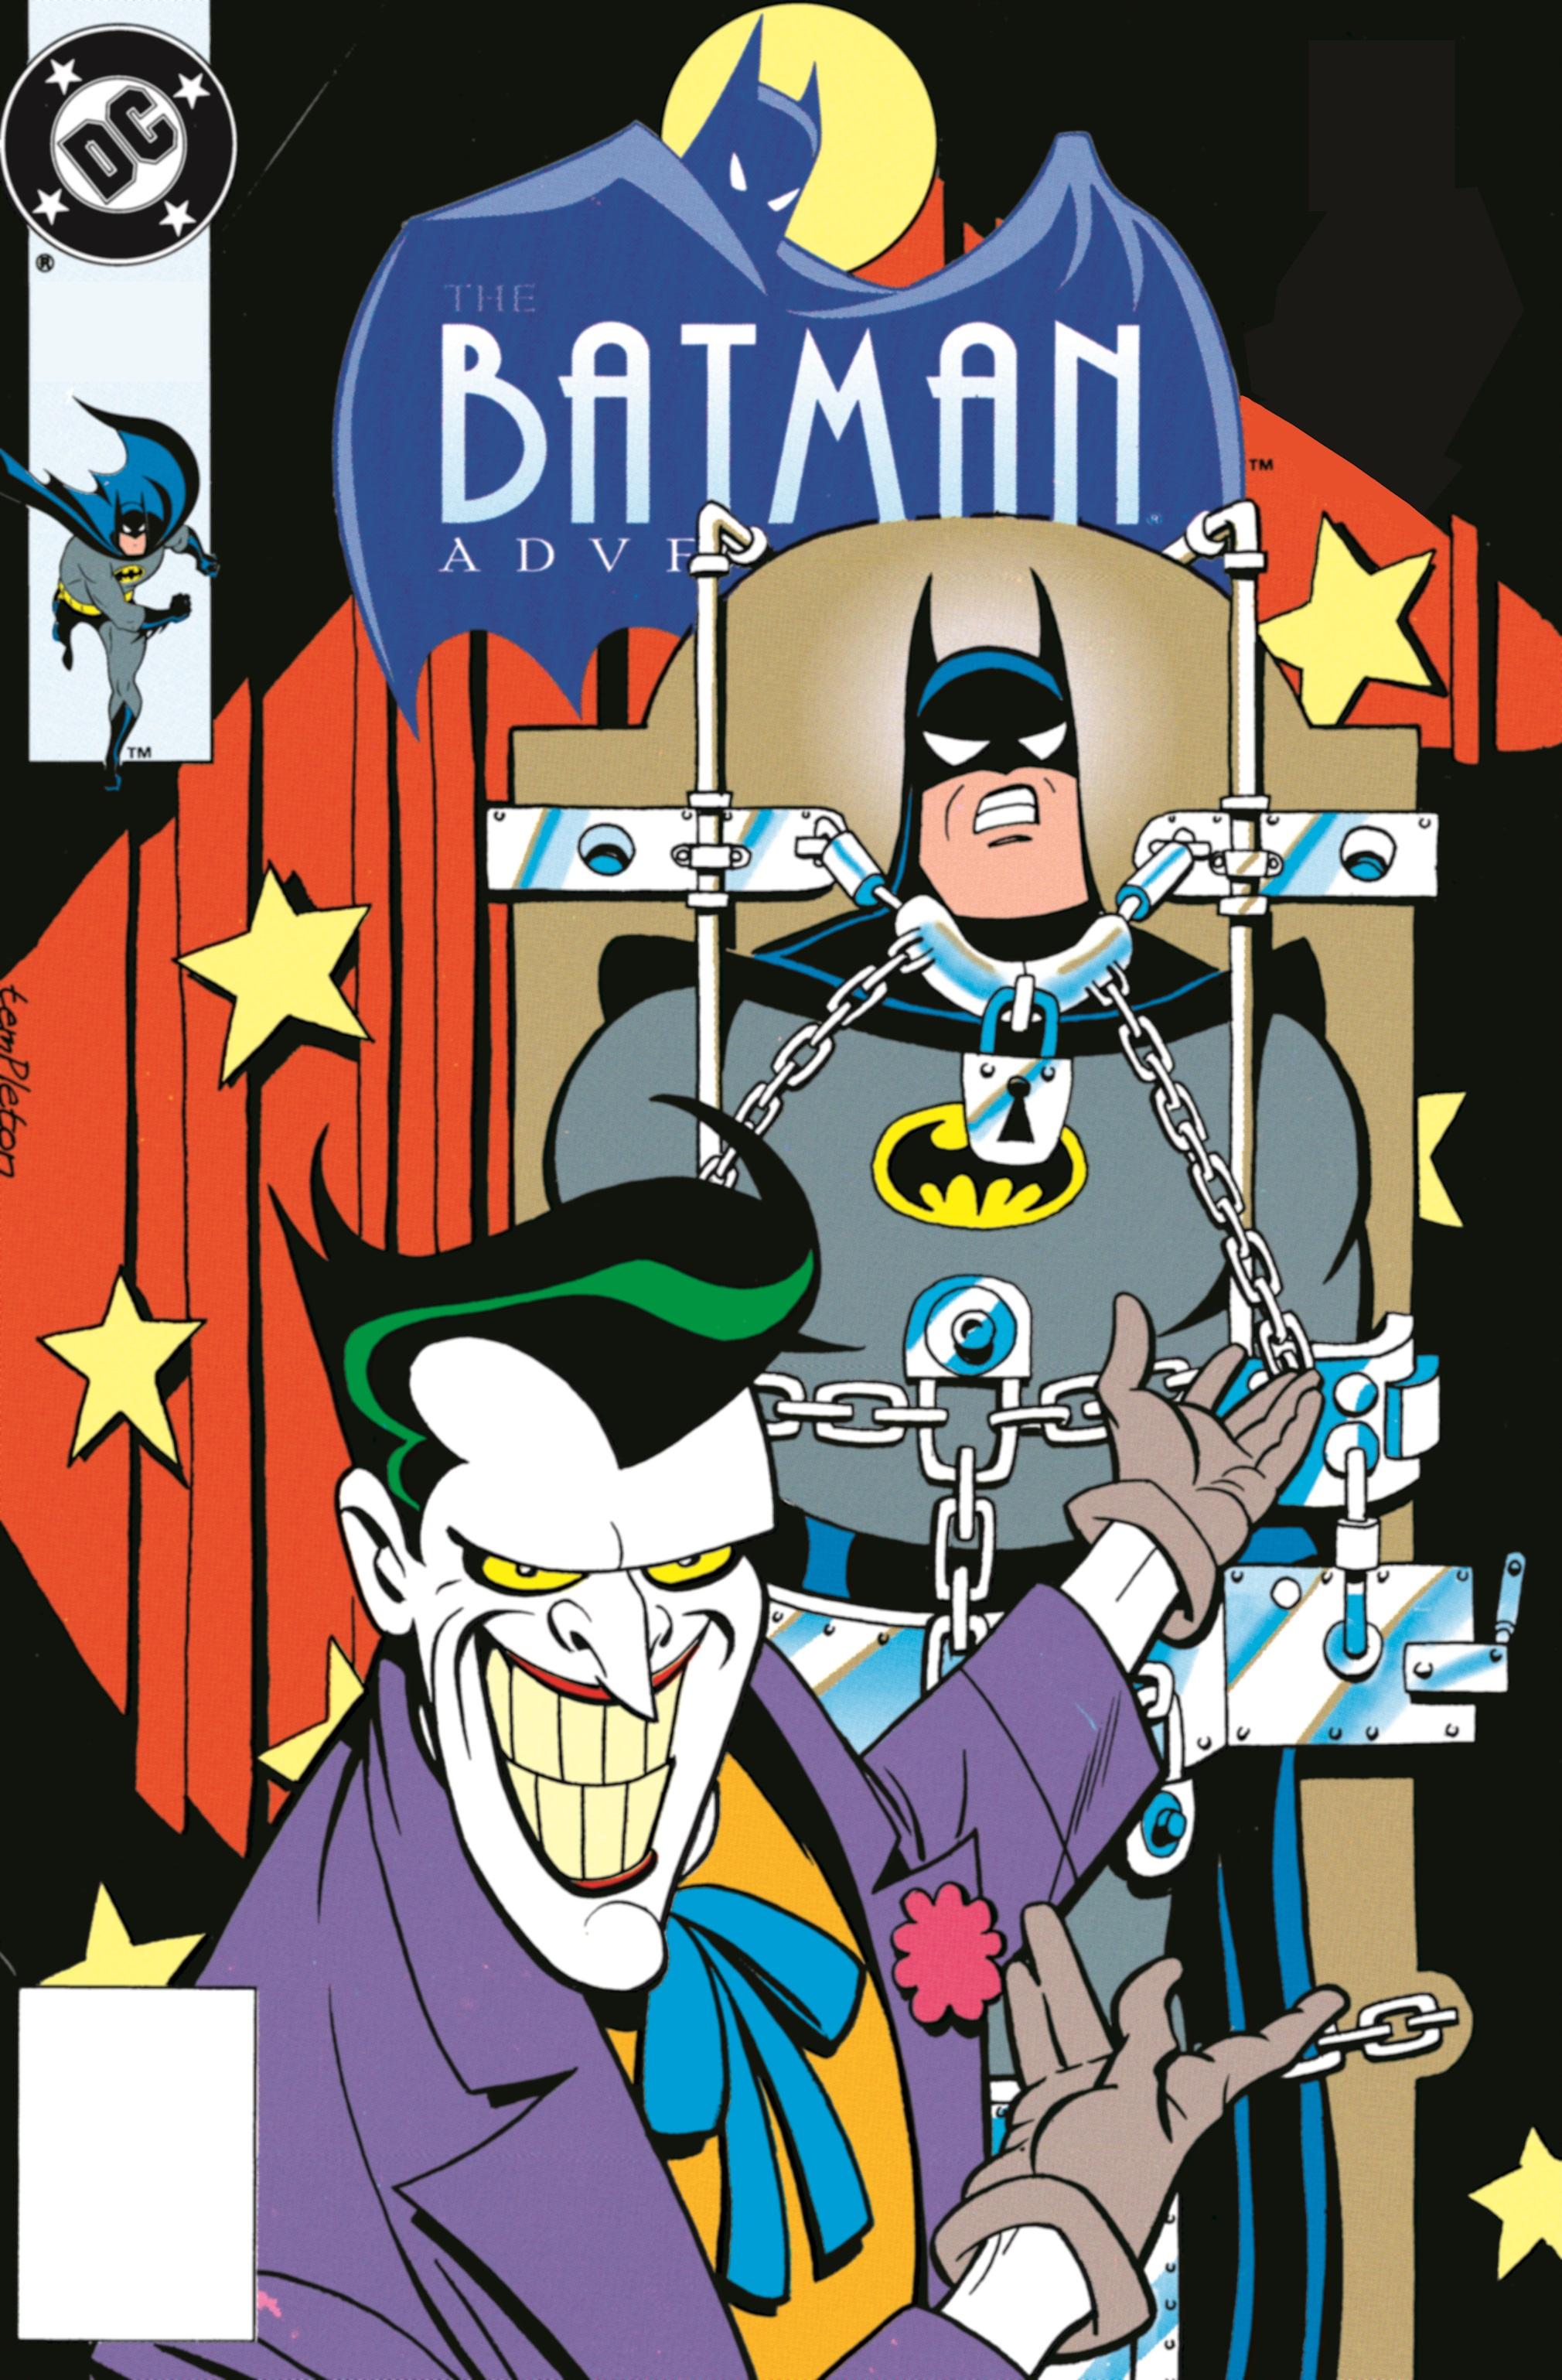 download the new adventures of batman 1977